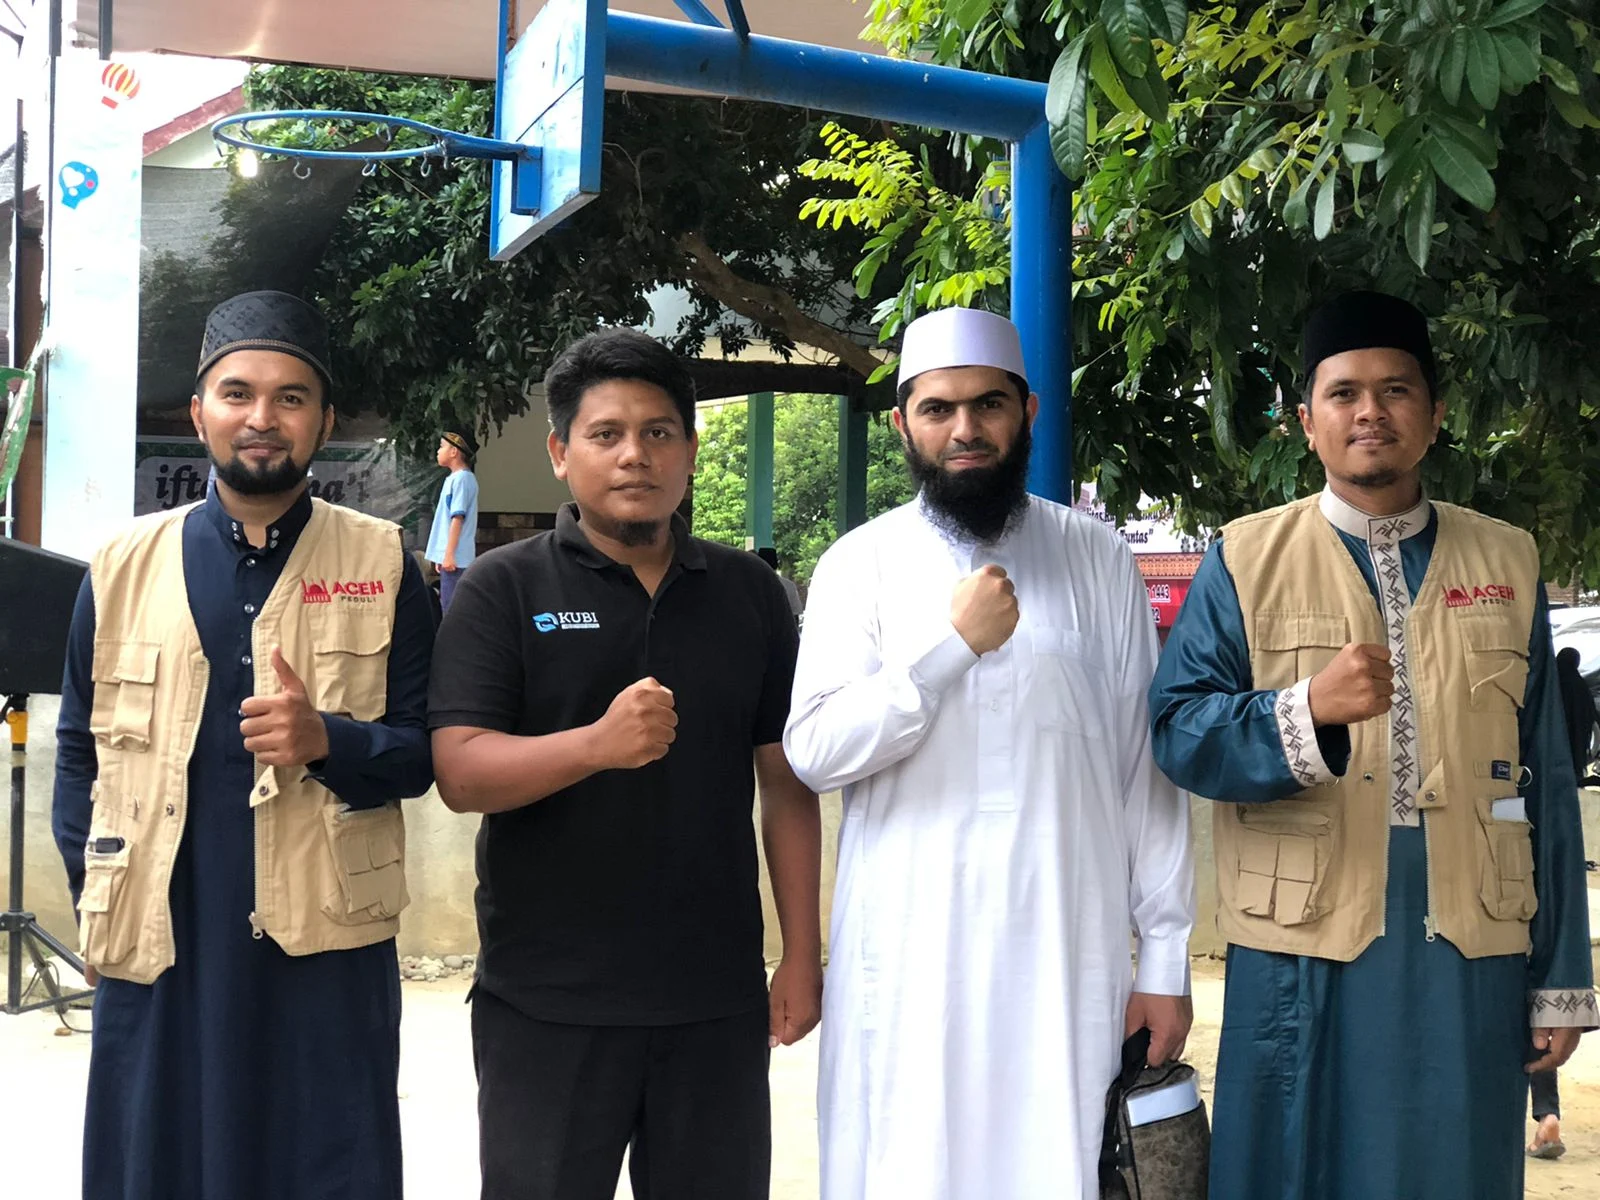 Alhamdulillah! 8 Hari di Bireuen, KUBI Bersama Aceh Peduli Dampingi Syeikh Salam Abu Hasyim Roadshow ke Mesjid dan Sekolah